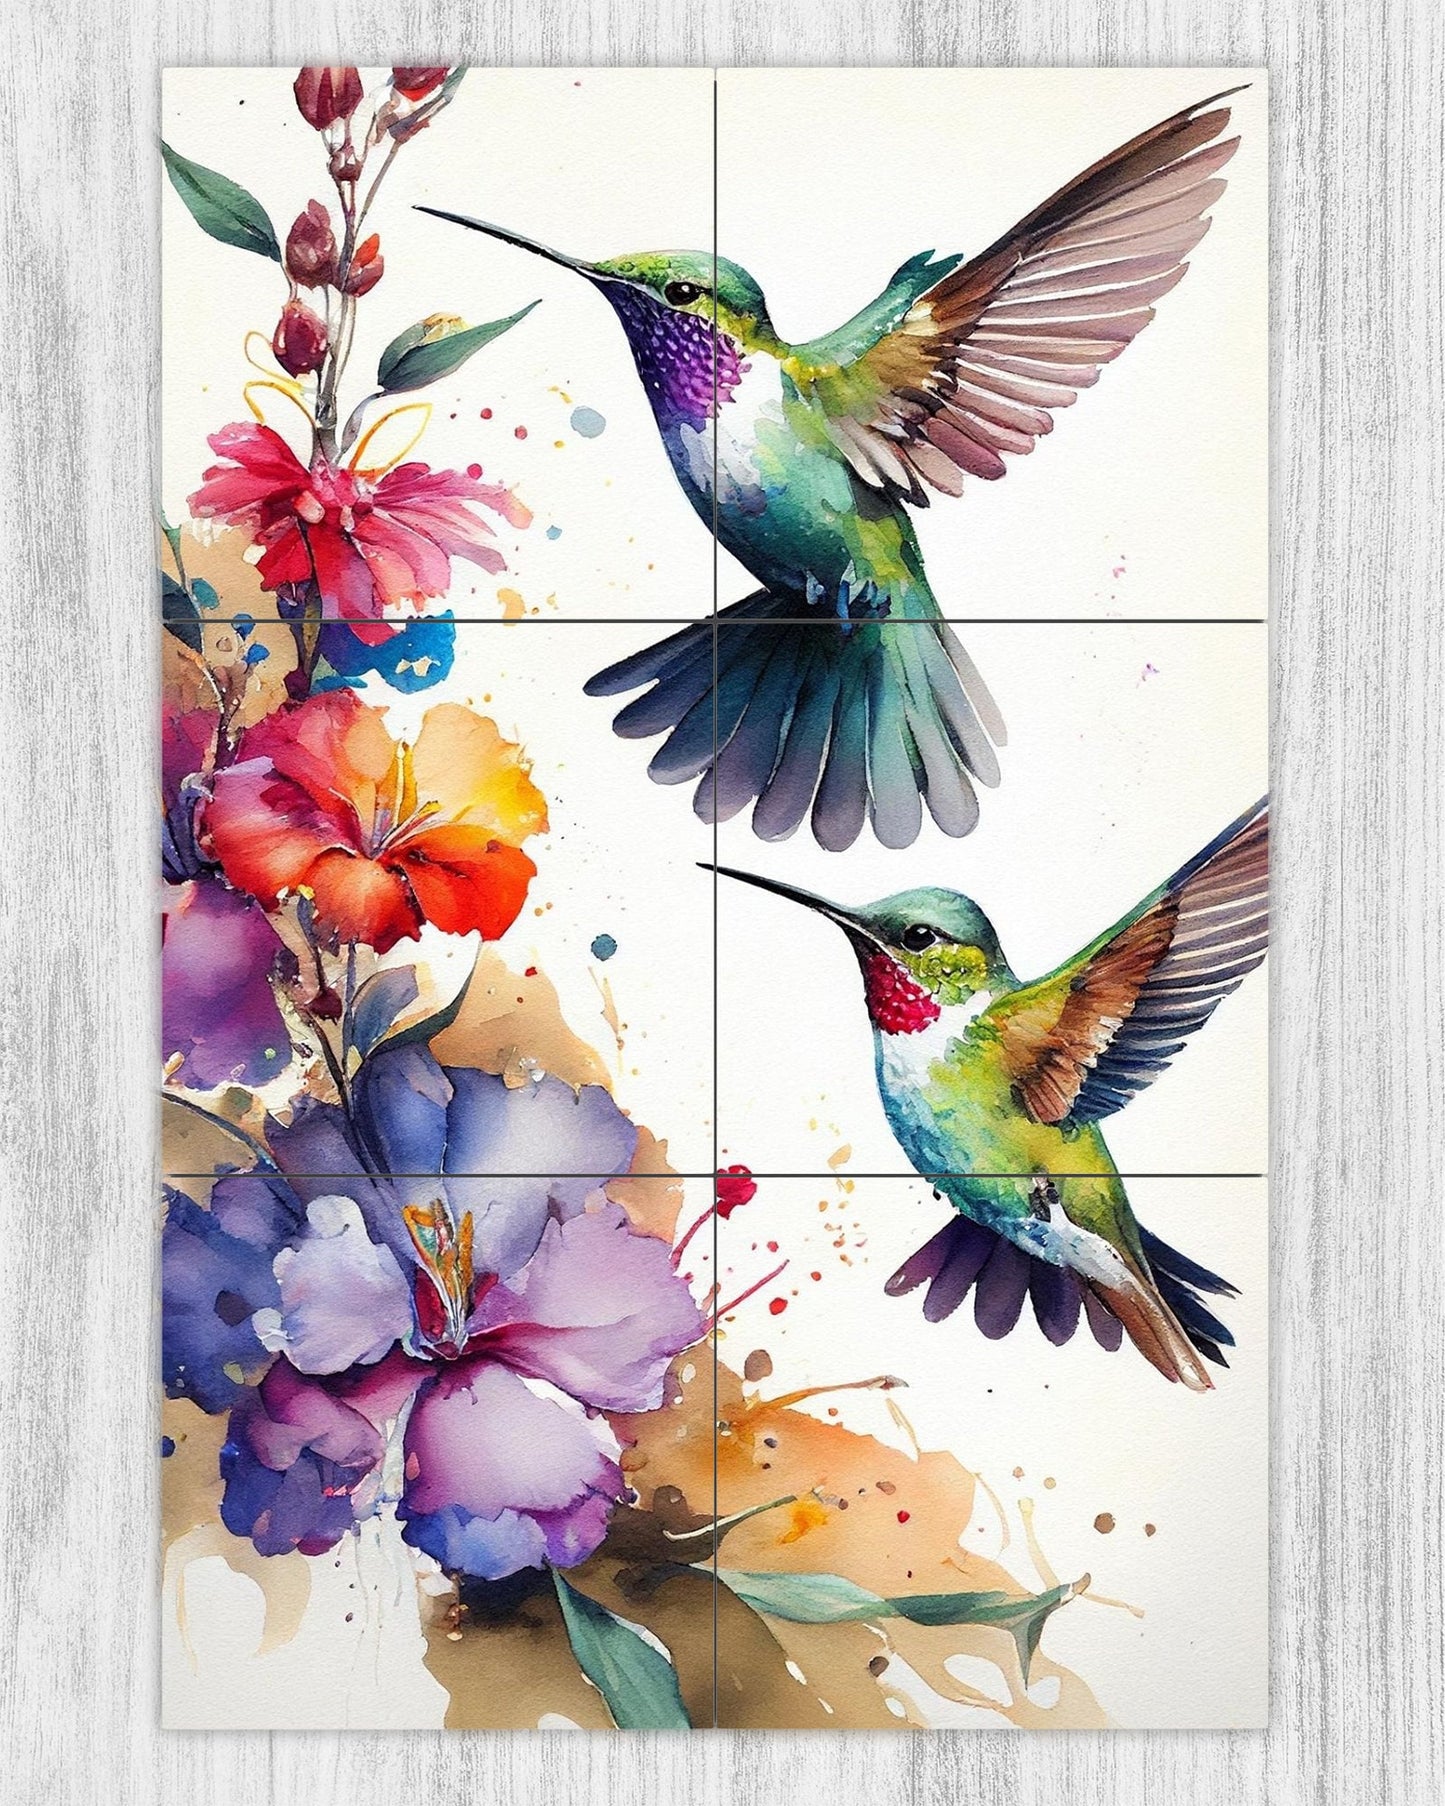 12x18 Hummingbird Art Ceramic Tile Mural